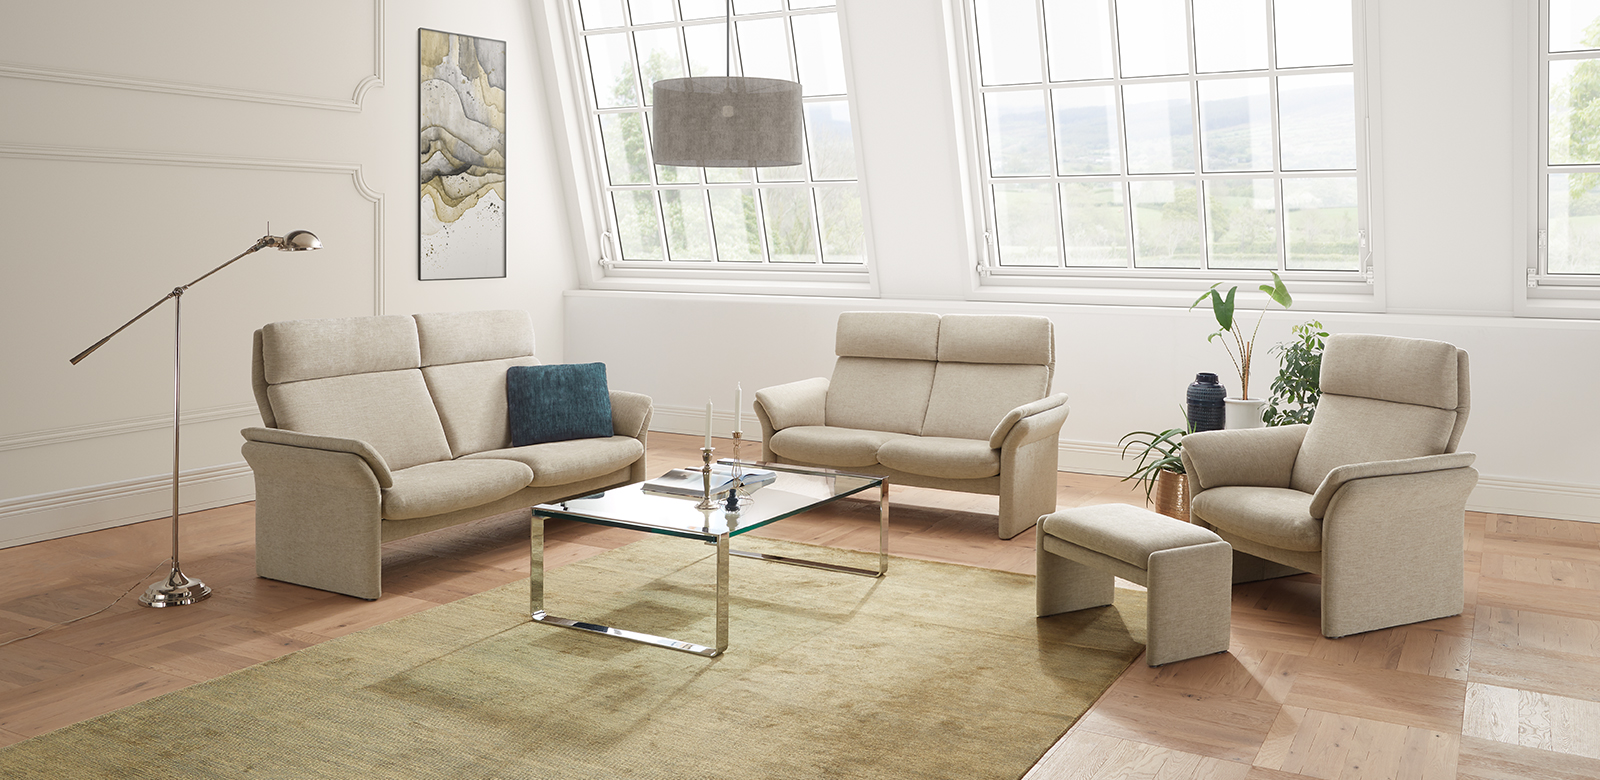 アヴィニヨン・ラインのソファは、言葉にできないほどの快適さを誇ります。ゆるやかな曲線が、あなたをくつろぎの空間へと誘います。